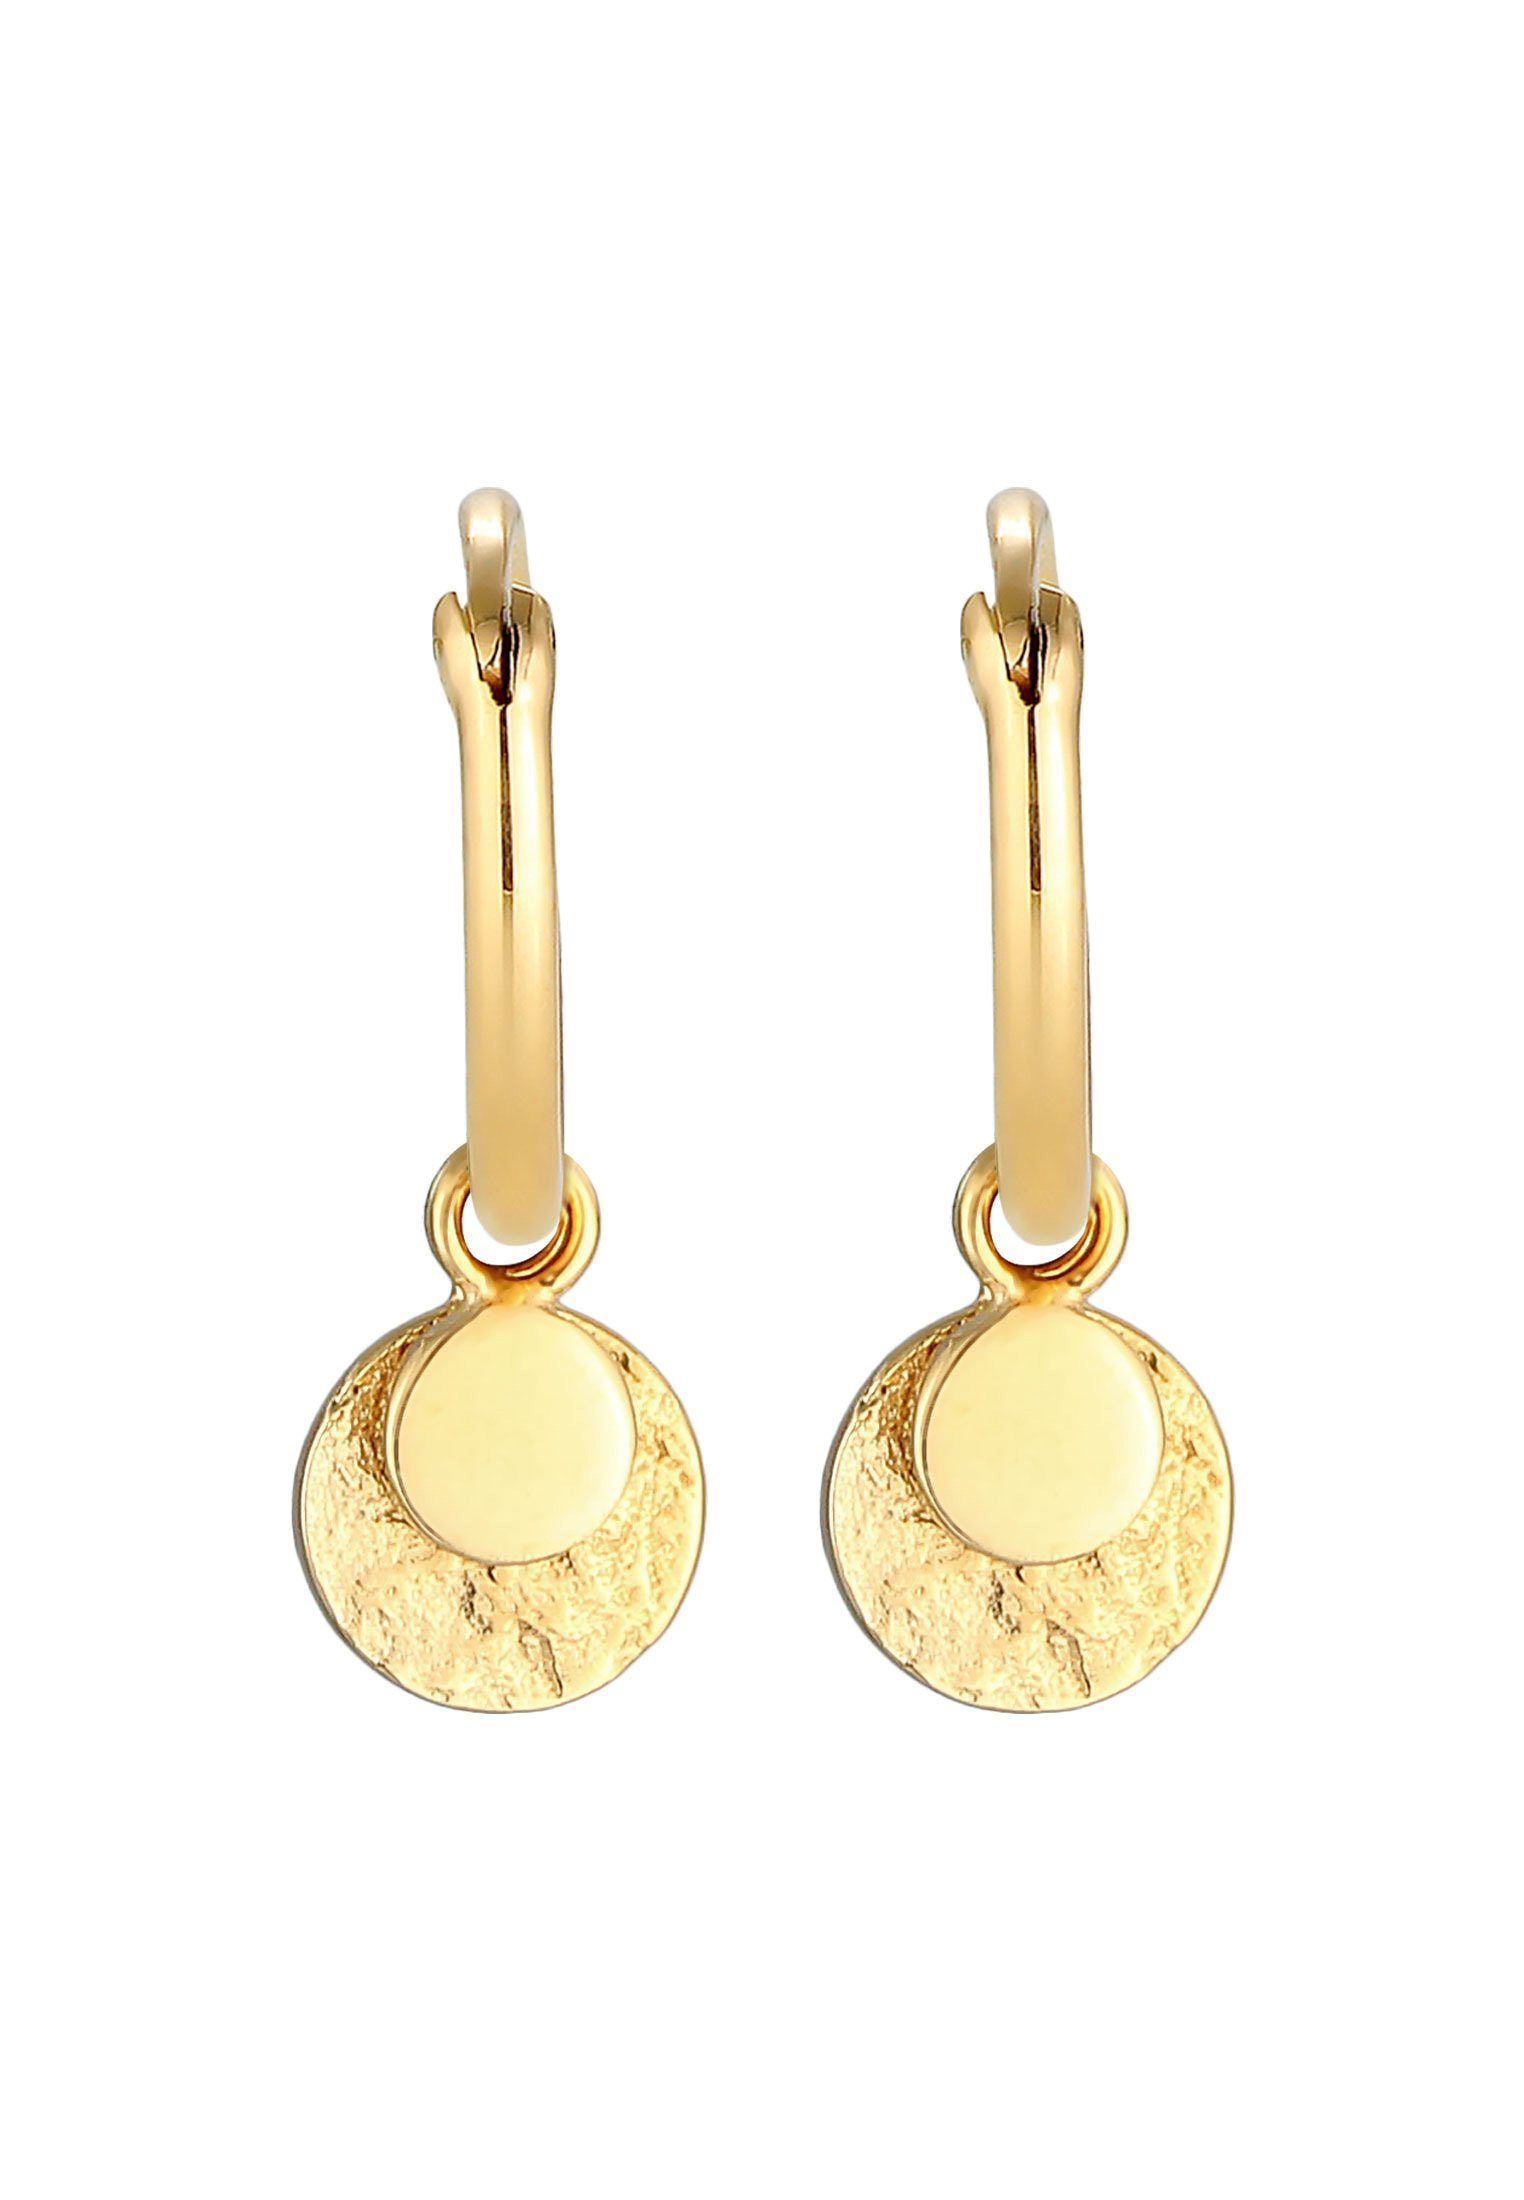 Silber Ohrhänger 925, Ohrhänger Elli Paar Vintage Plättchen Creolen Gold Geo